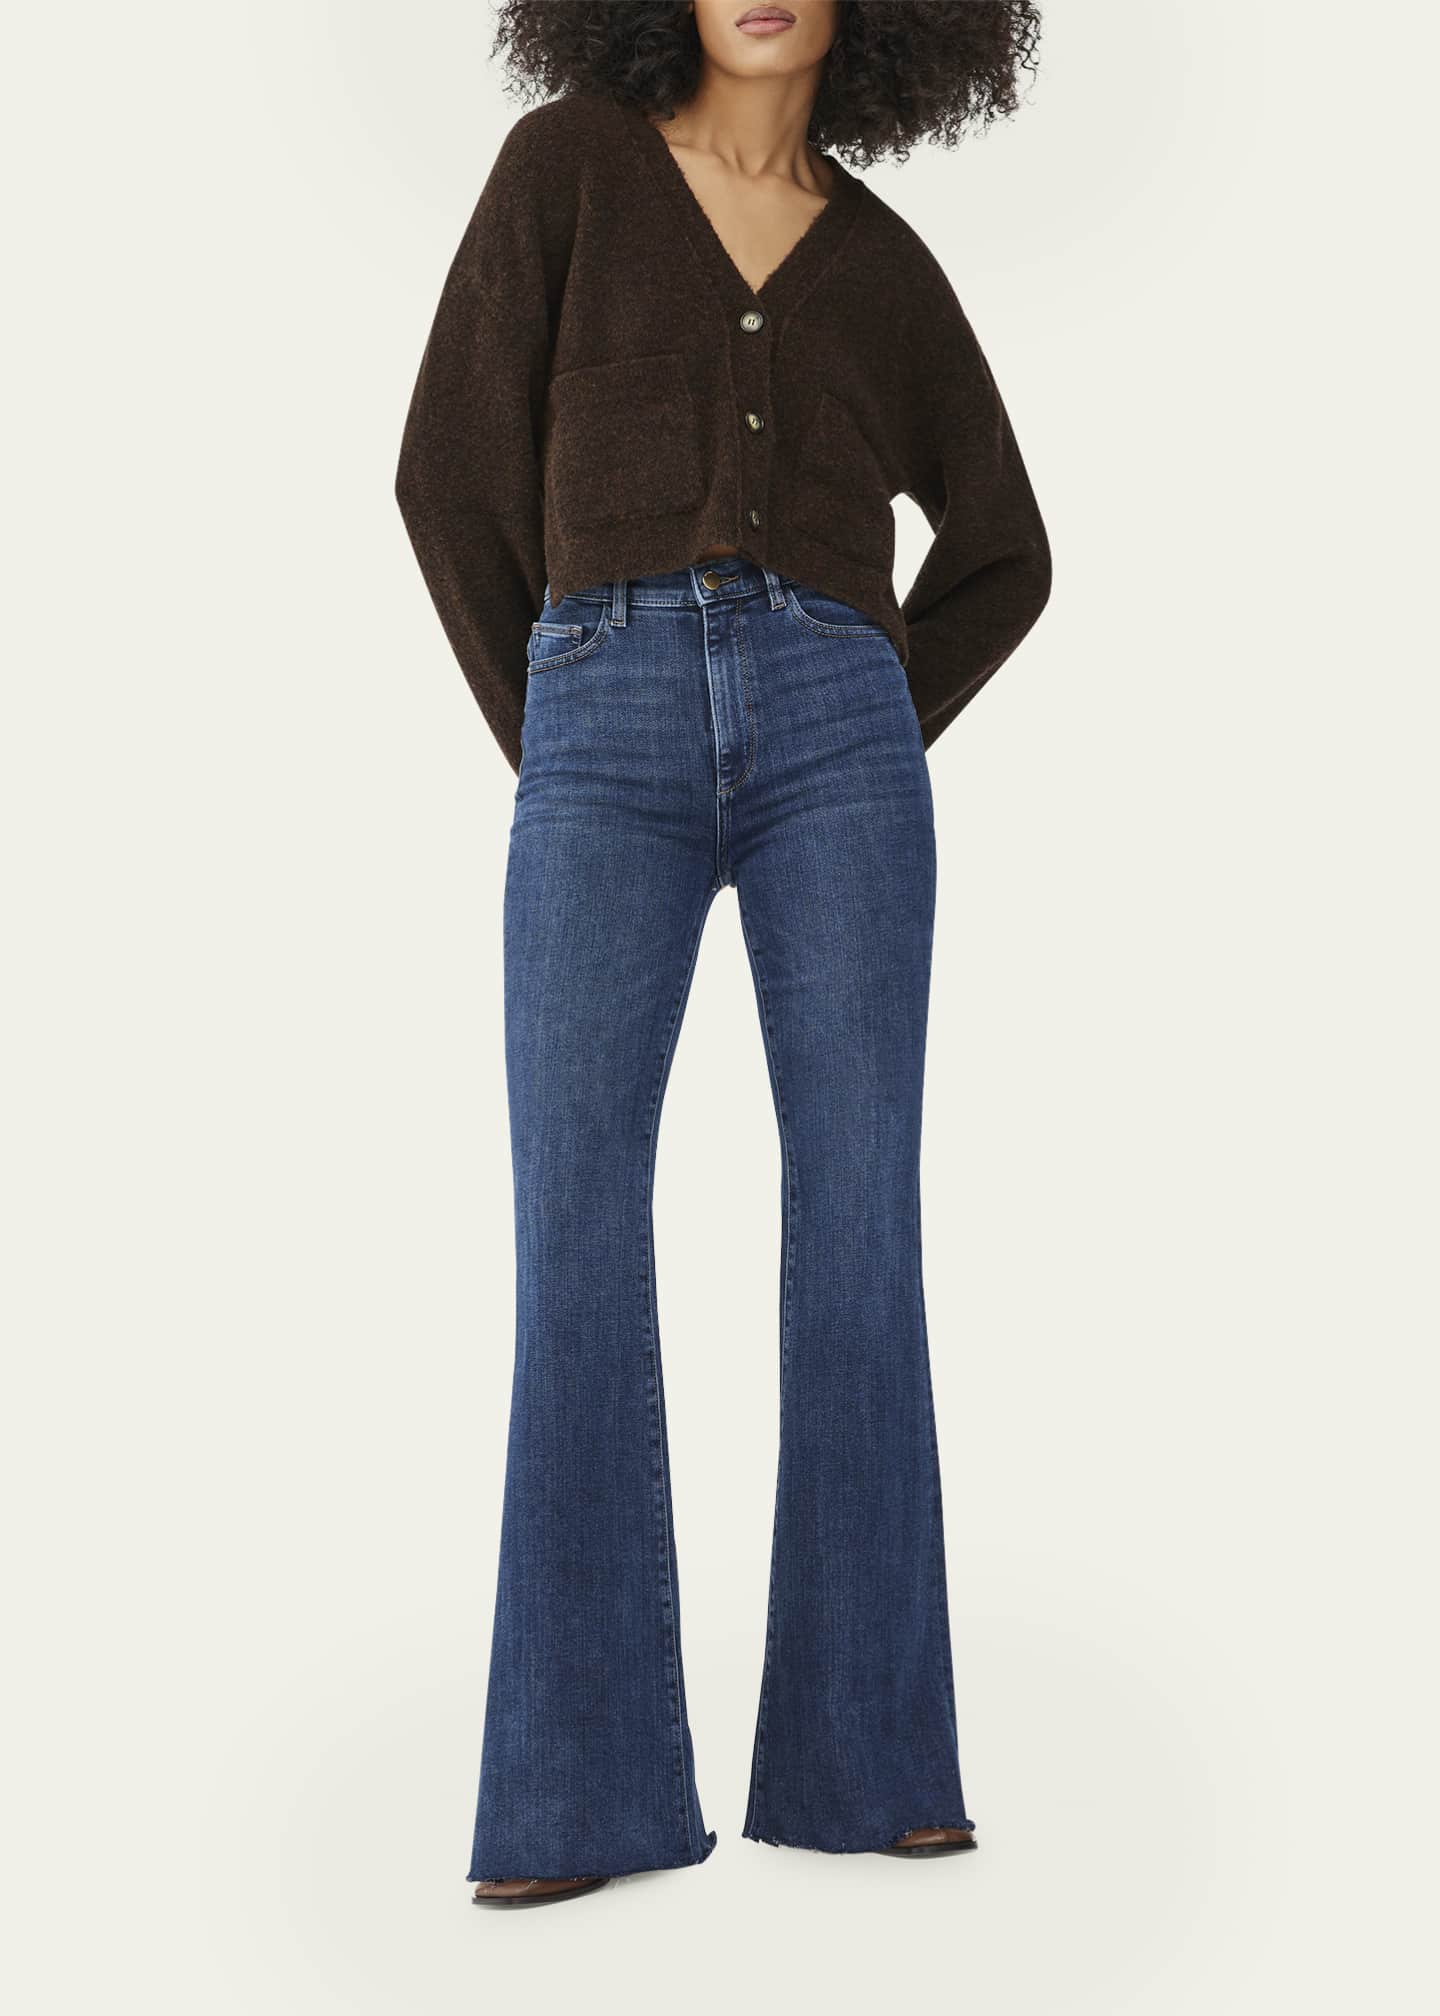 DL1961 Rachel Flare Ultra High-Rise Instasculpt Jeans - Bergdorf Goodman